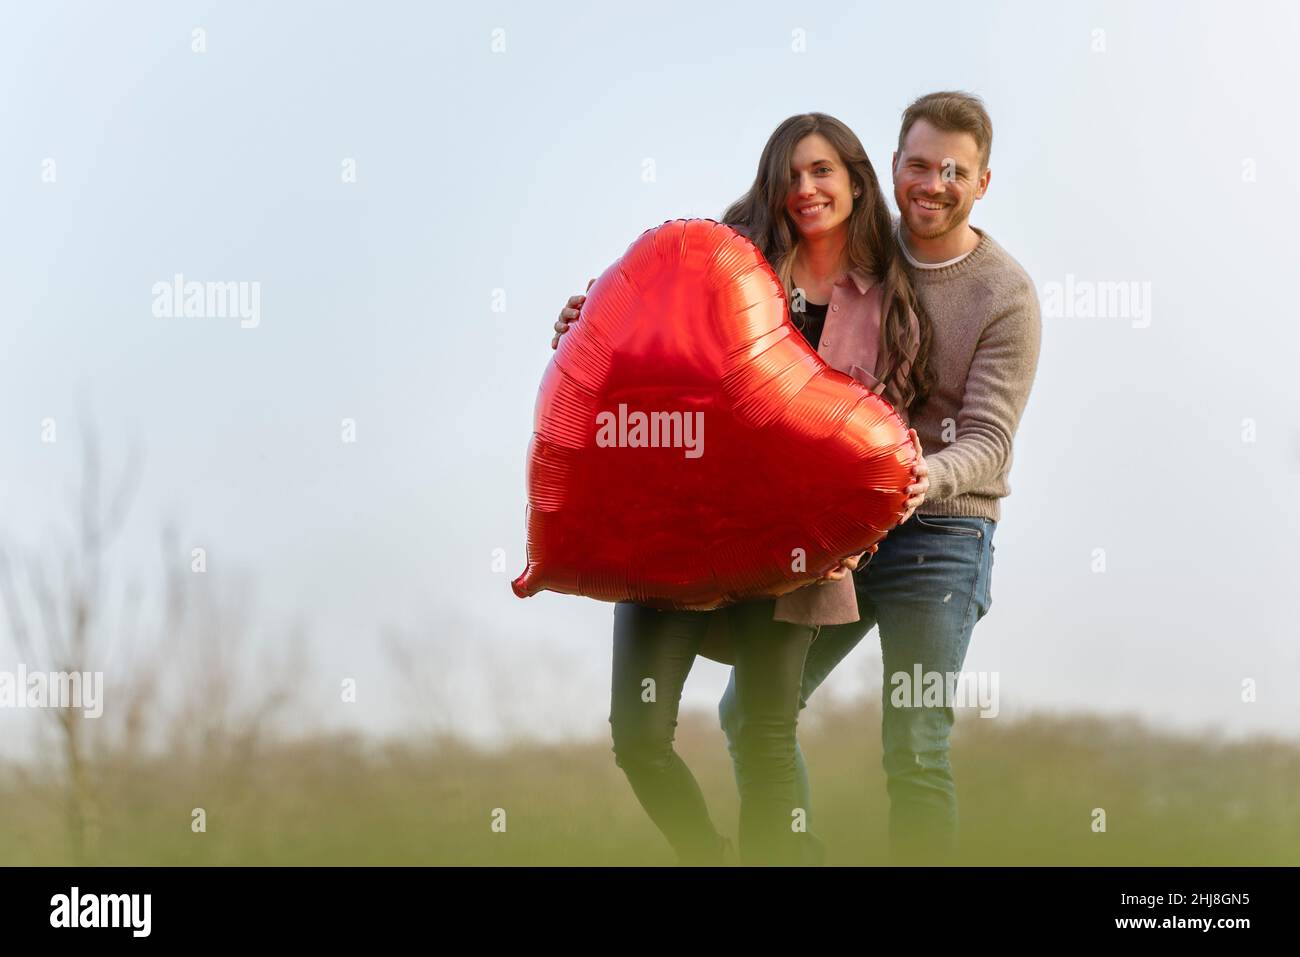 Jeune couple célébrant la Saint-Valentin en tenant une montgolfière rouge en forme de cœur Banque D'Images